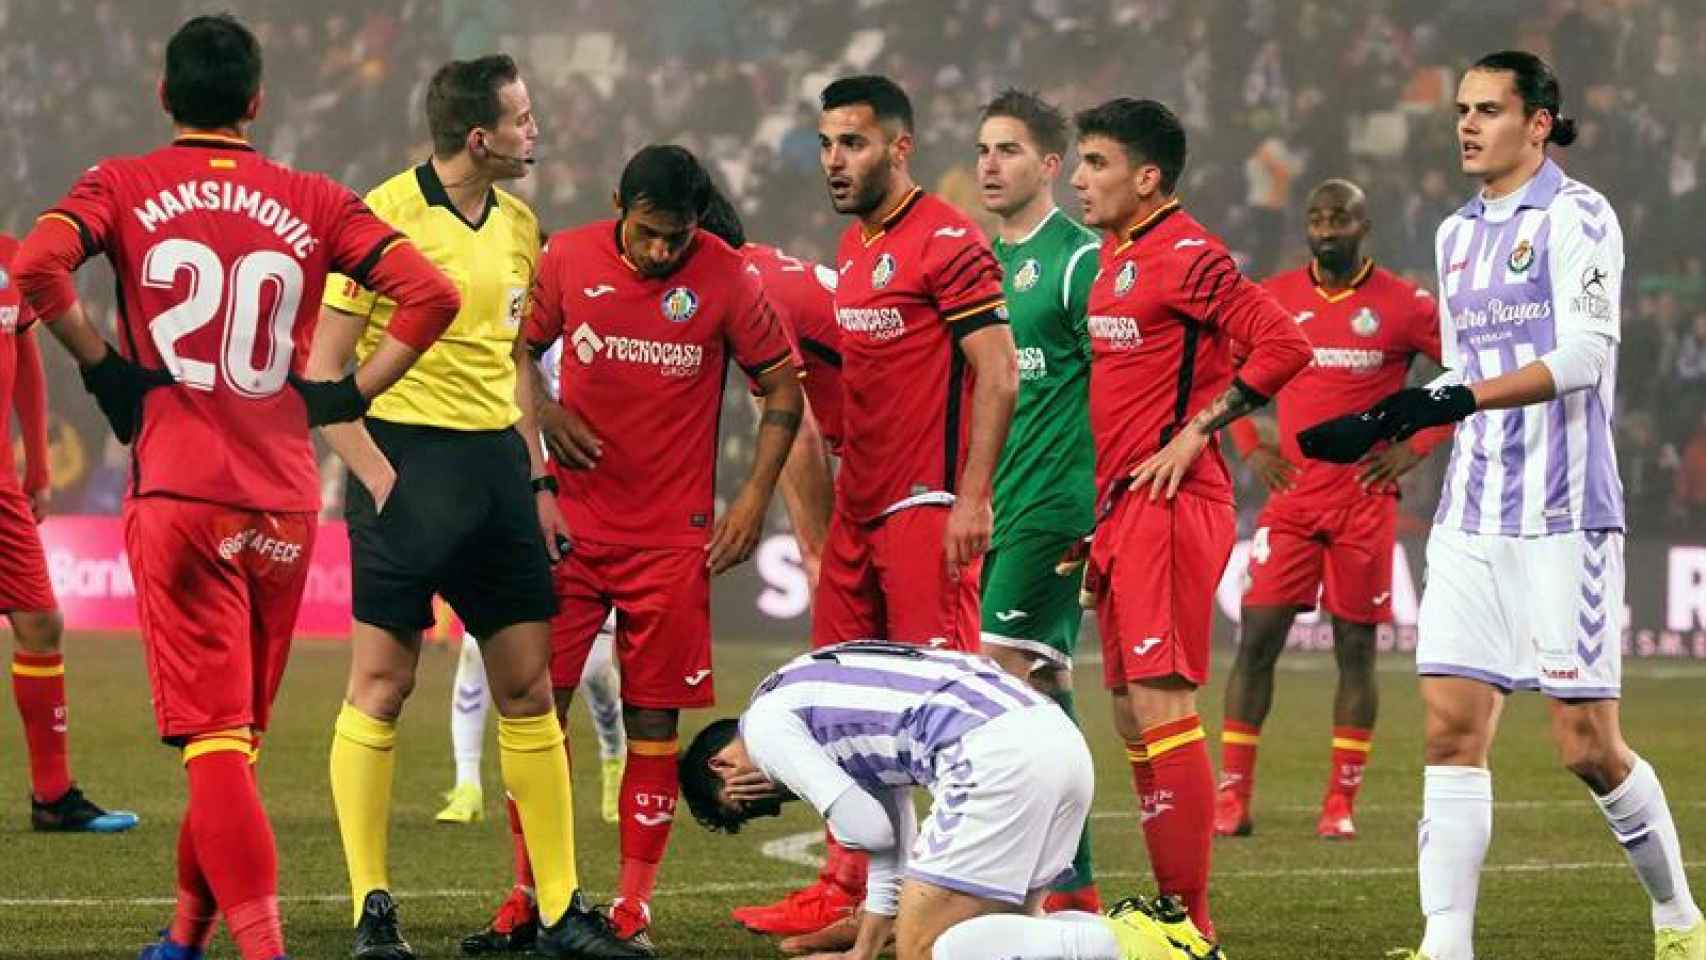 El colegiado decreta penalti a favor del Valladolid en el partido de Copa ante el Getafe